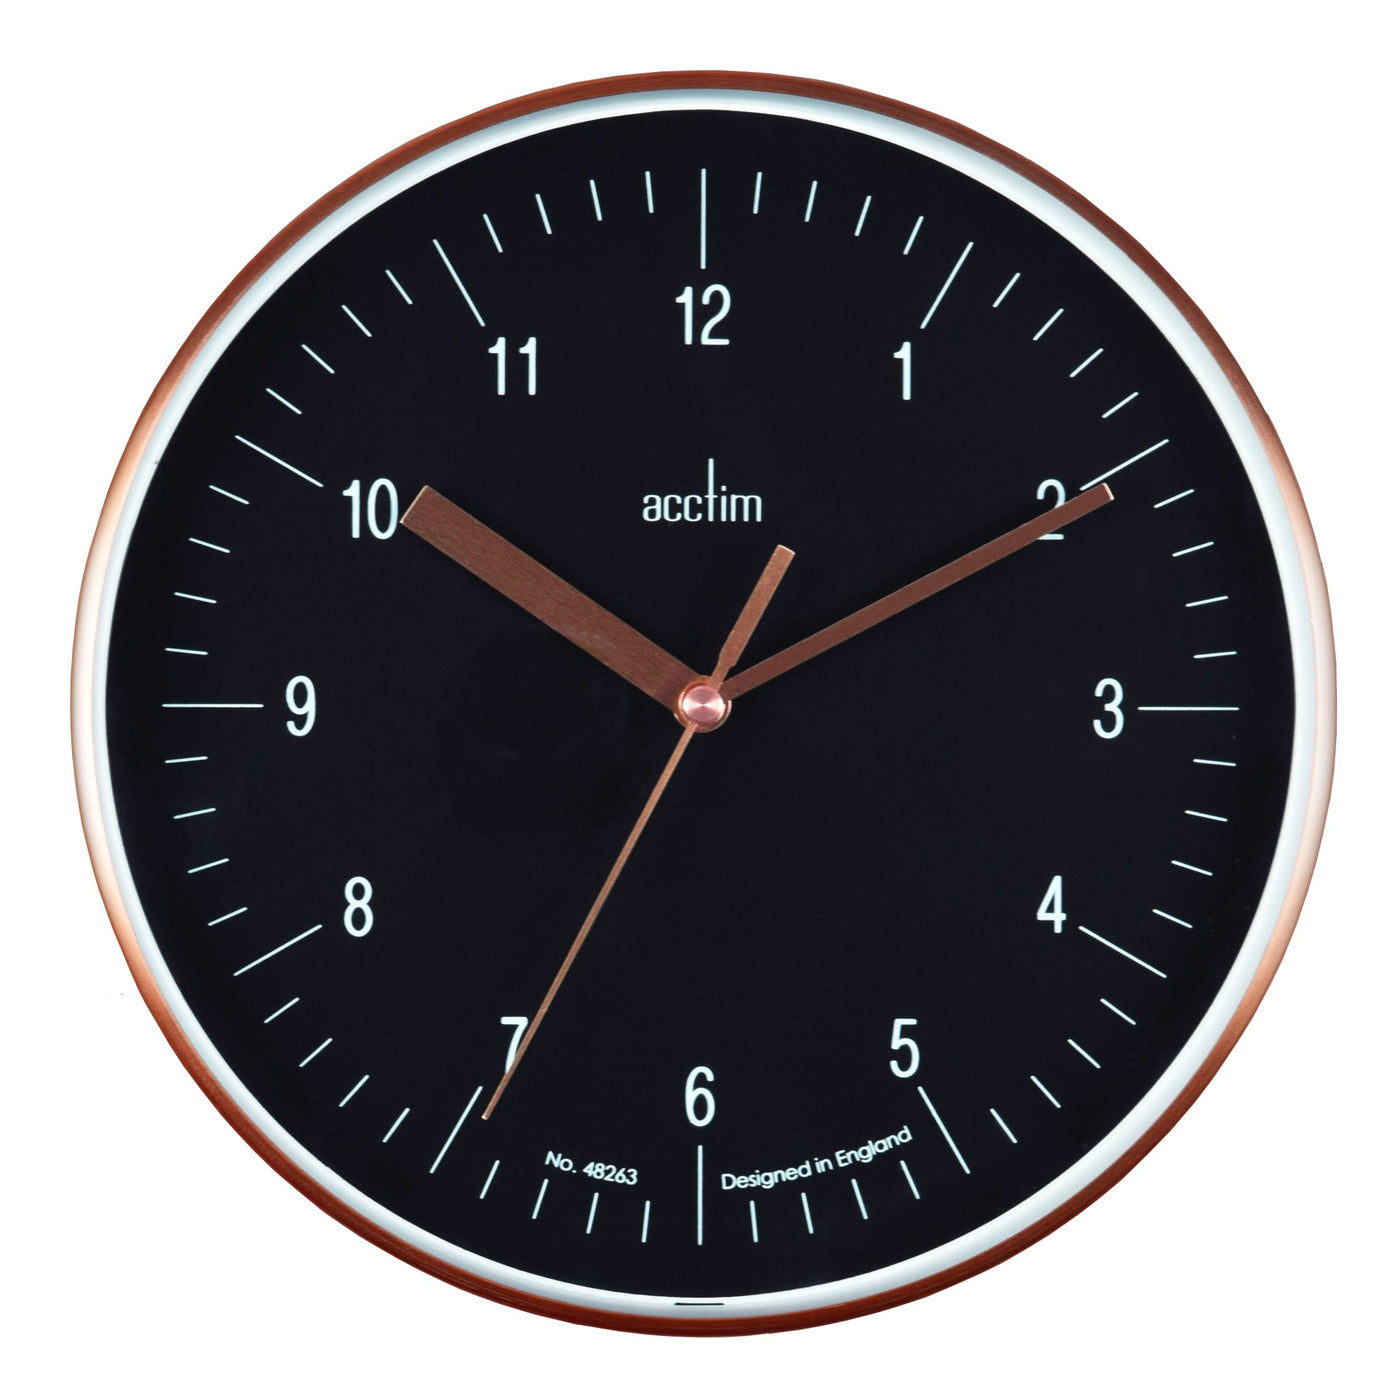 Acctim Colt Wall Clock Copper Black Dial - timeframedclocks